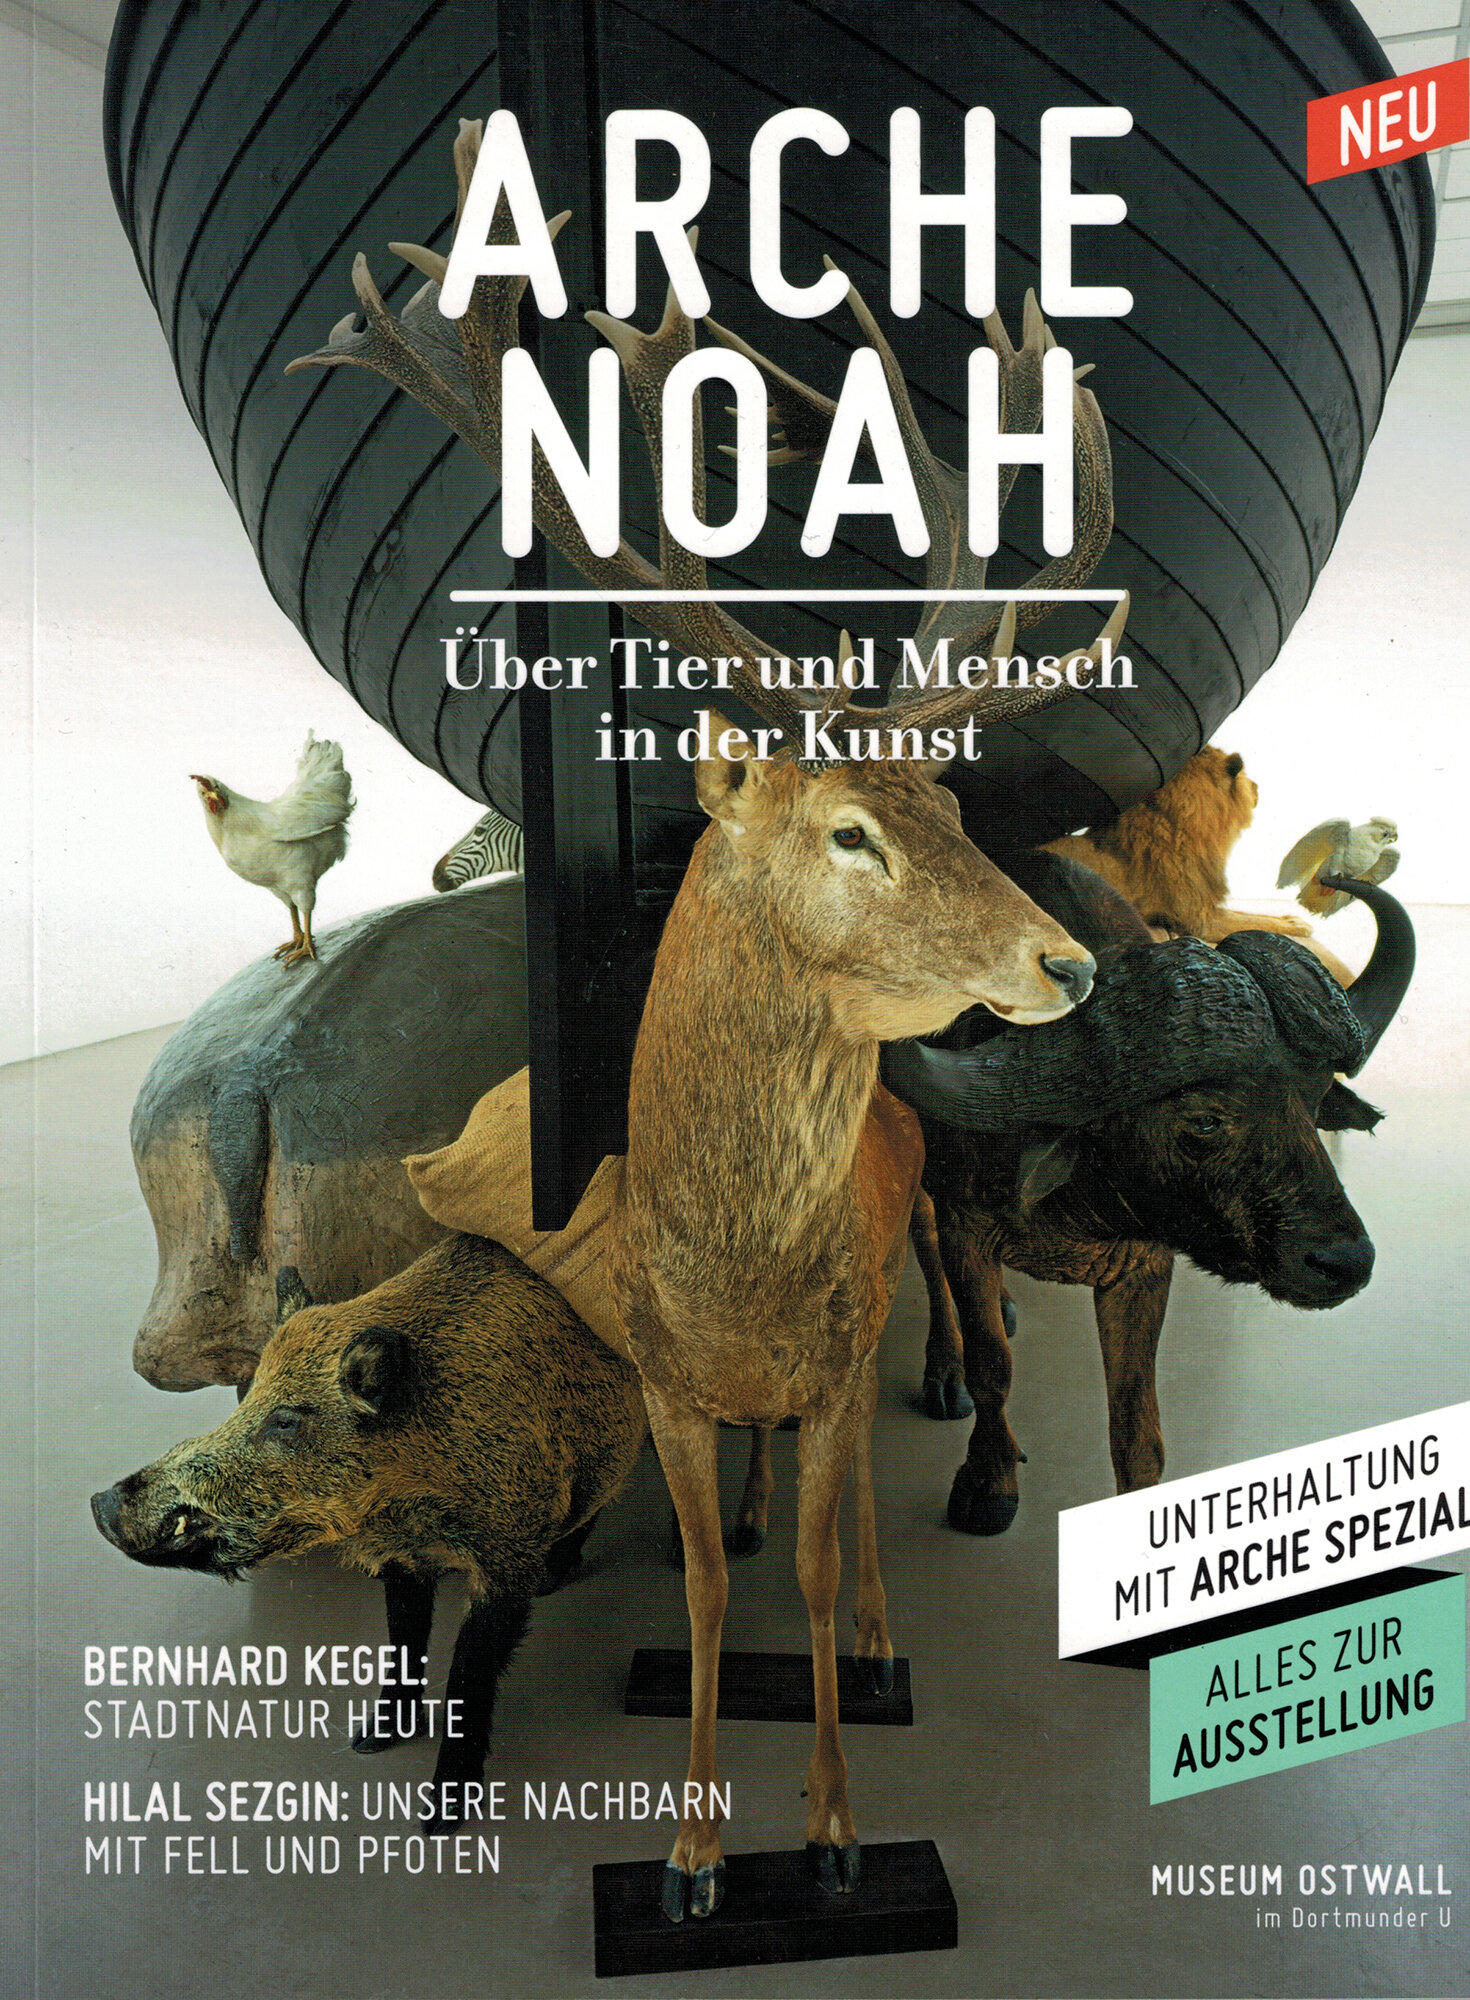 Arche Noah Catalogue_Page_1.jpg